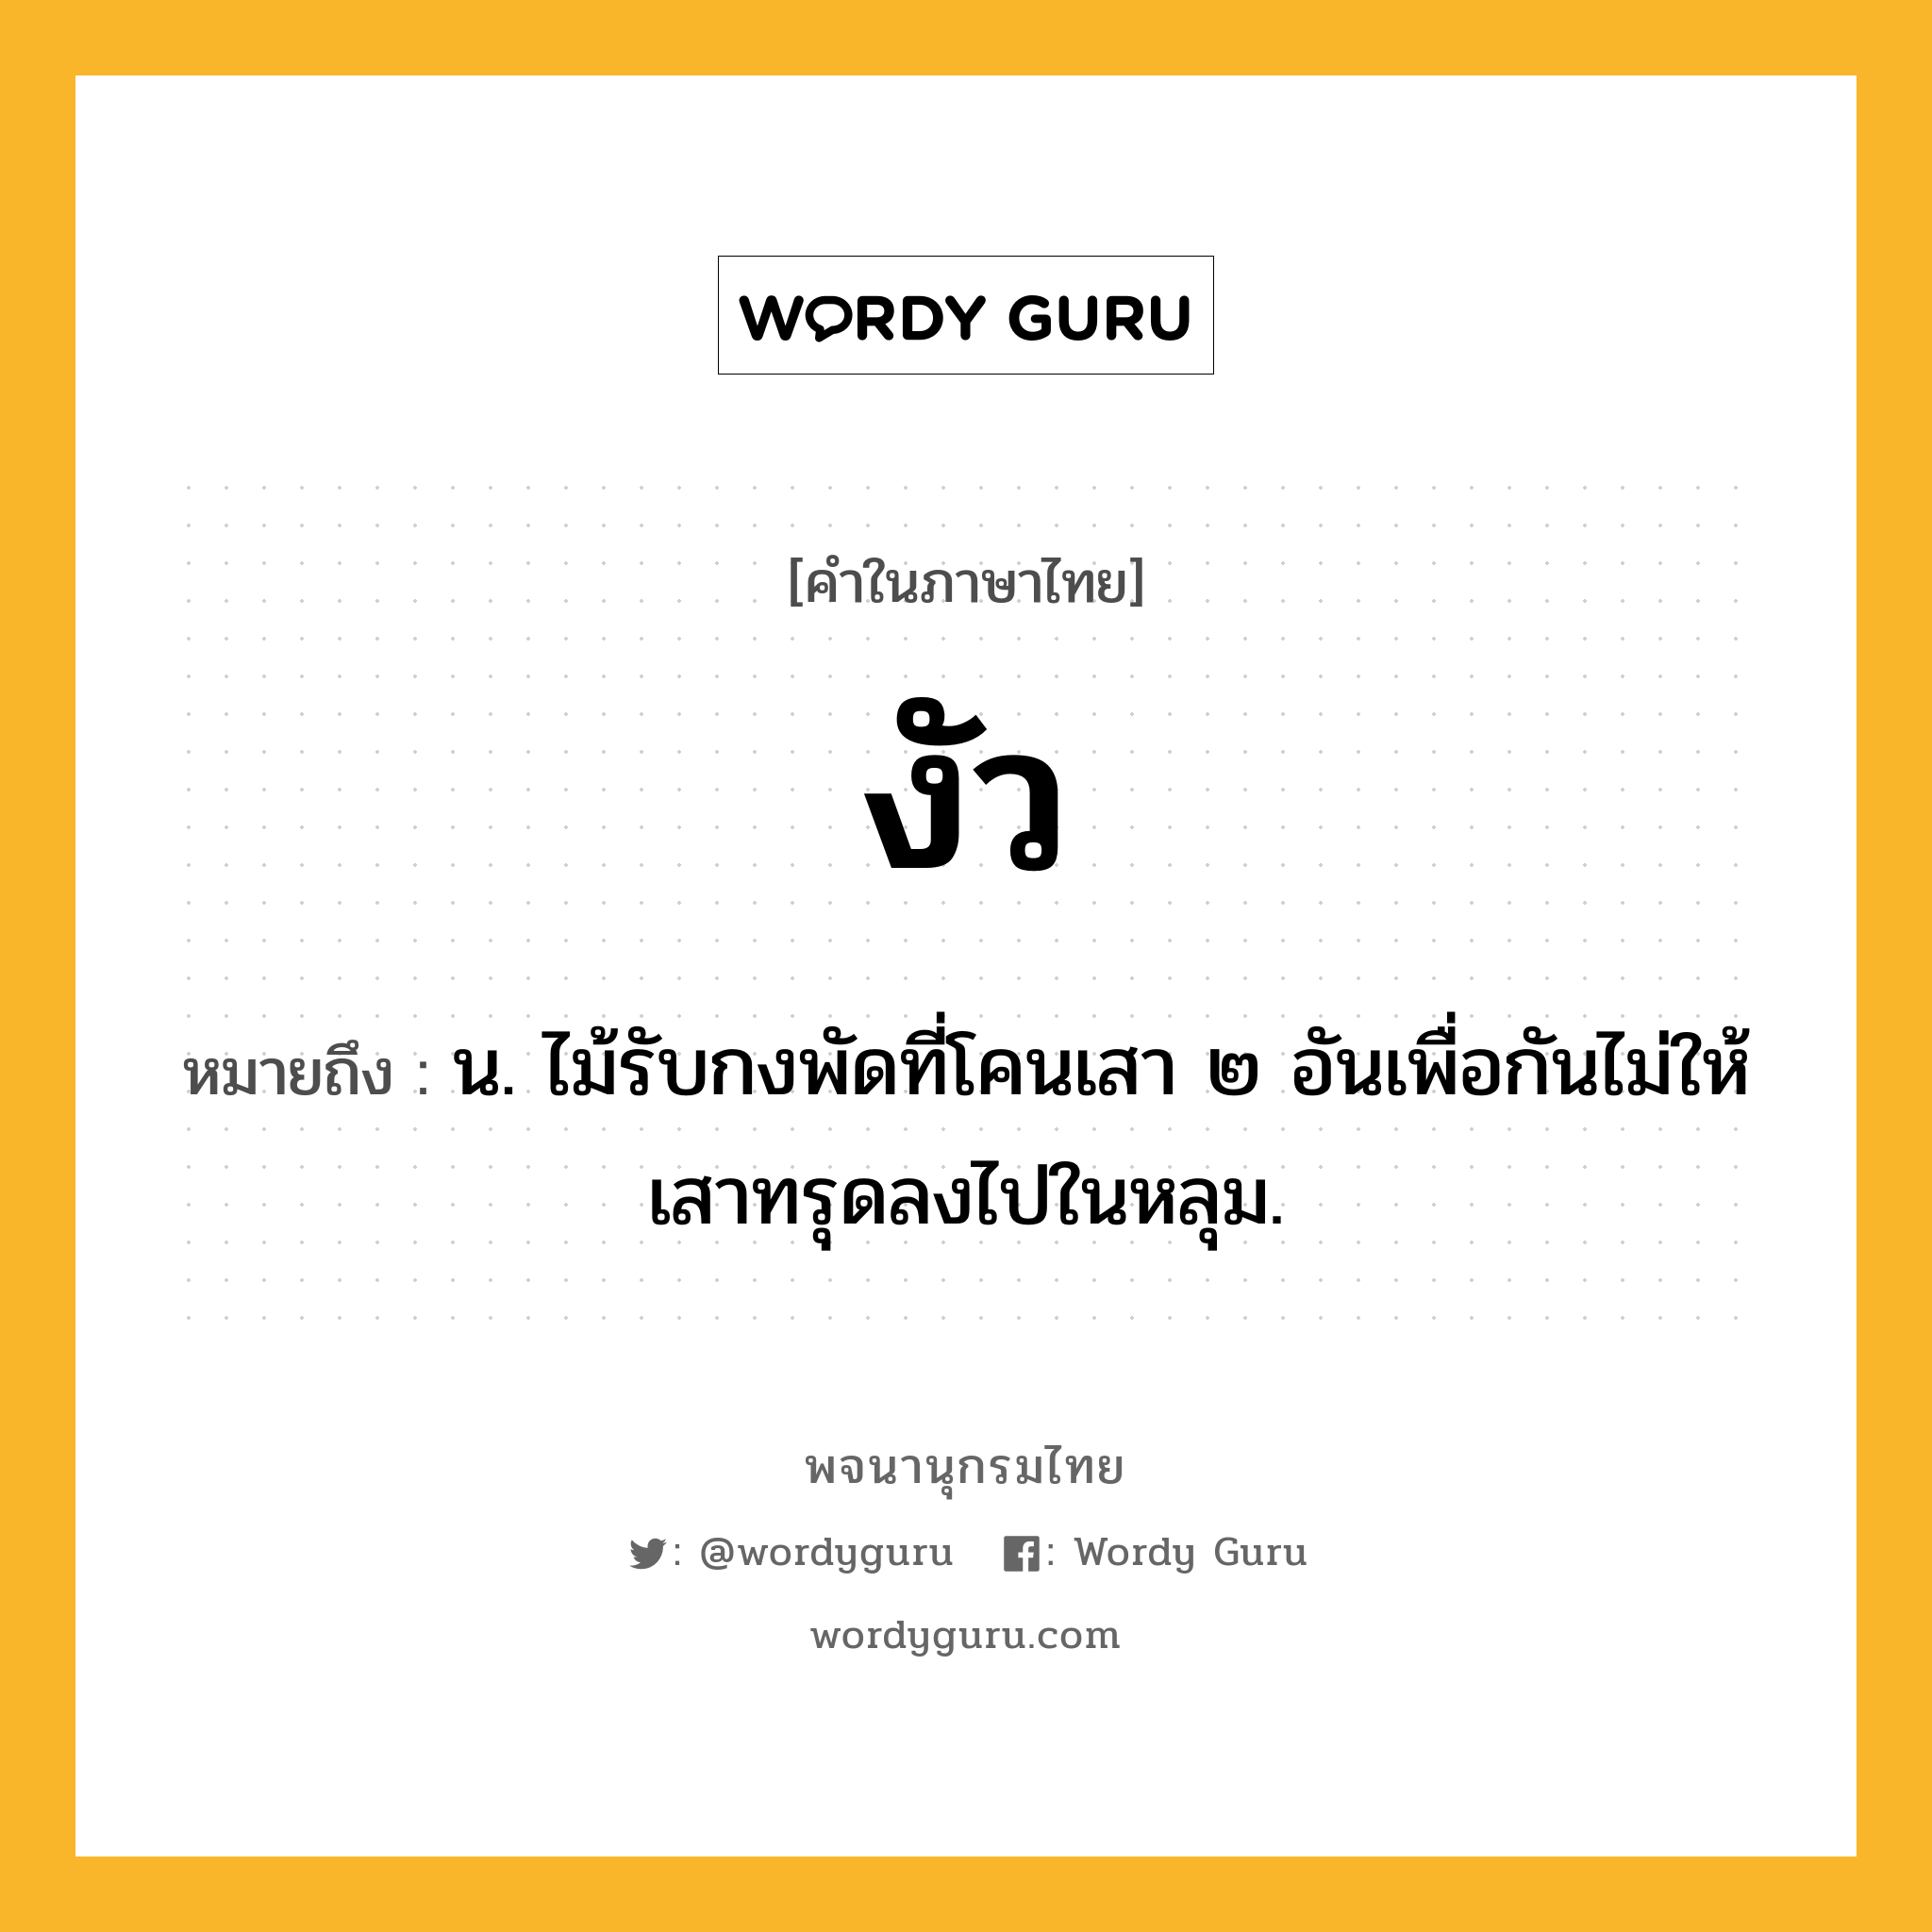 งัว ความหมาย หมายถึงอะไร?, คำในภาษาไทย งัว หมายถึง น. ไม้รับกงพัดที่โคนเสา ๒ อันเพื่อกันไม่ให้เสาทรุดลงไปในหลุม.